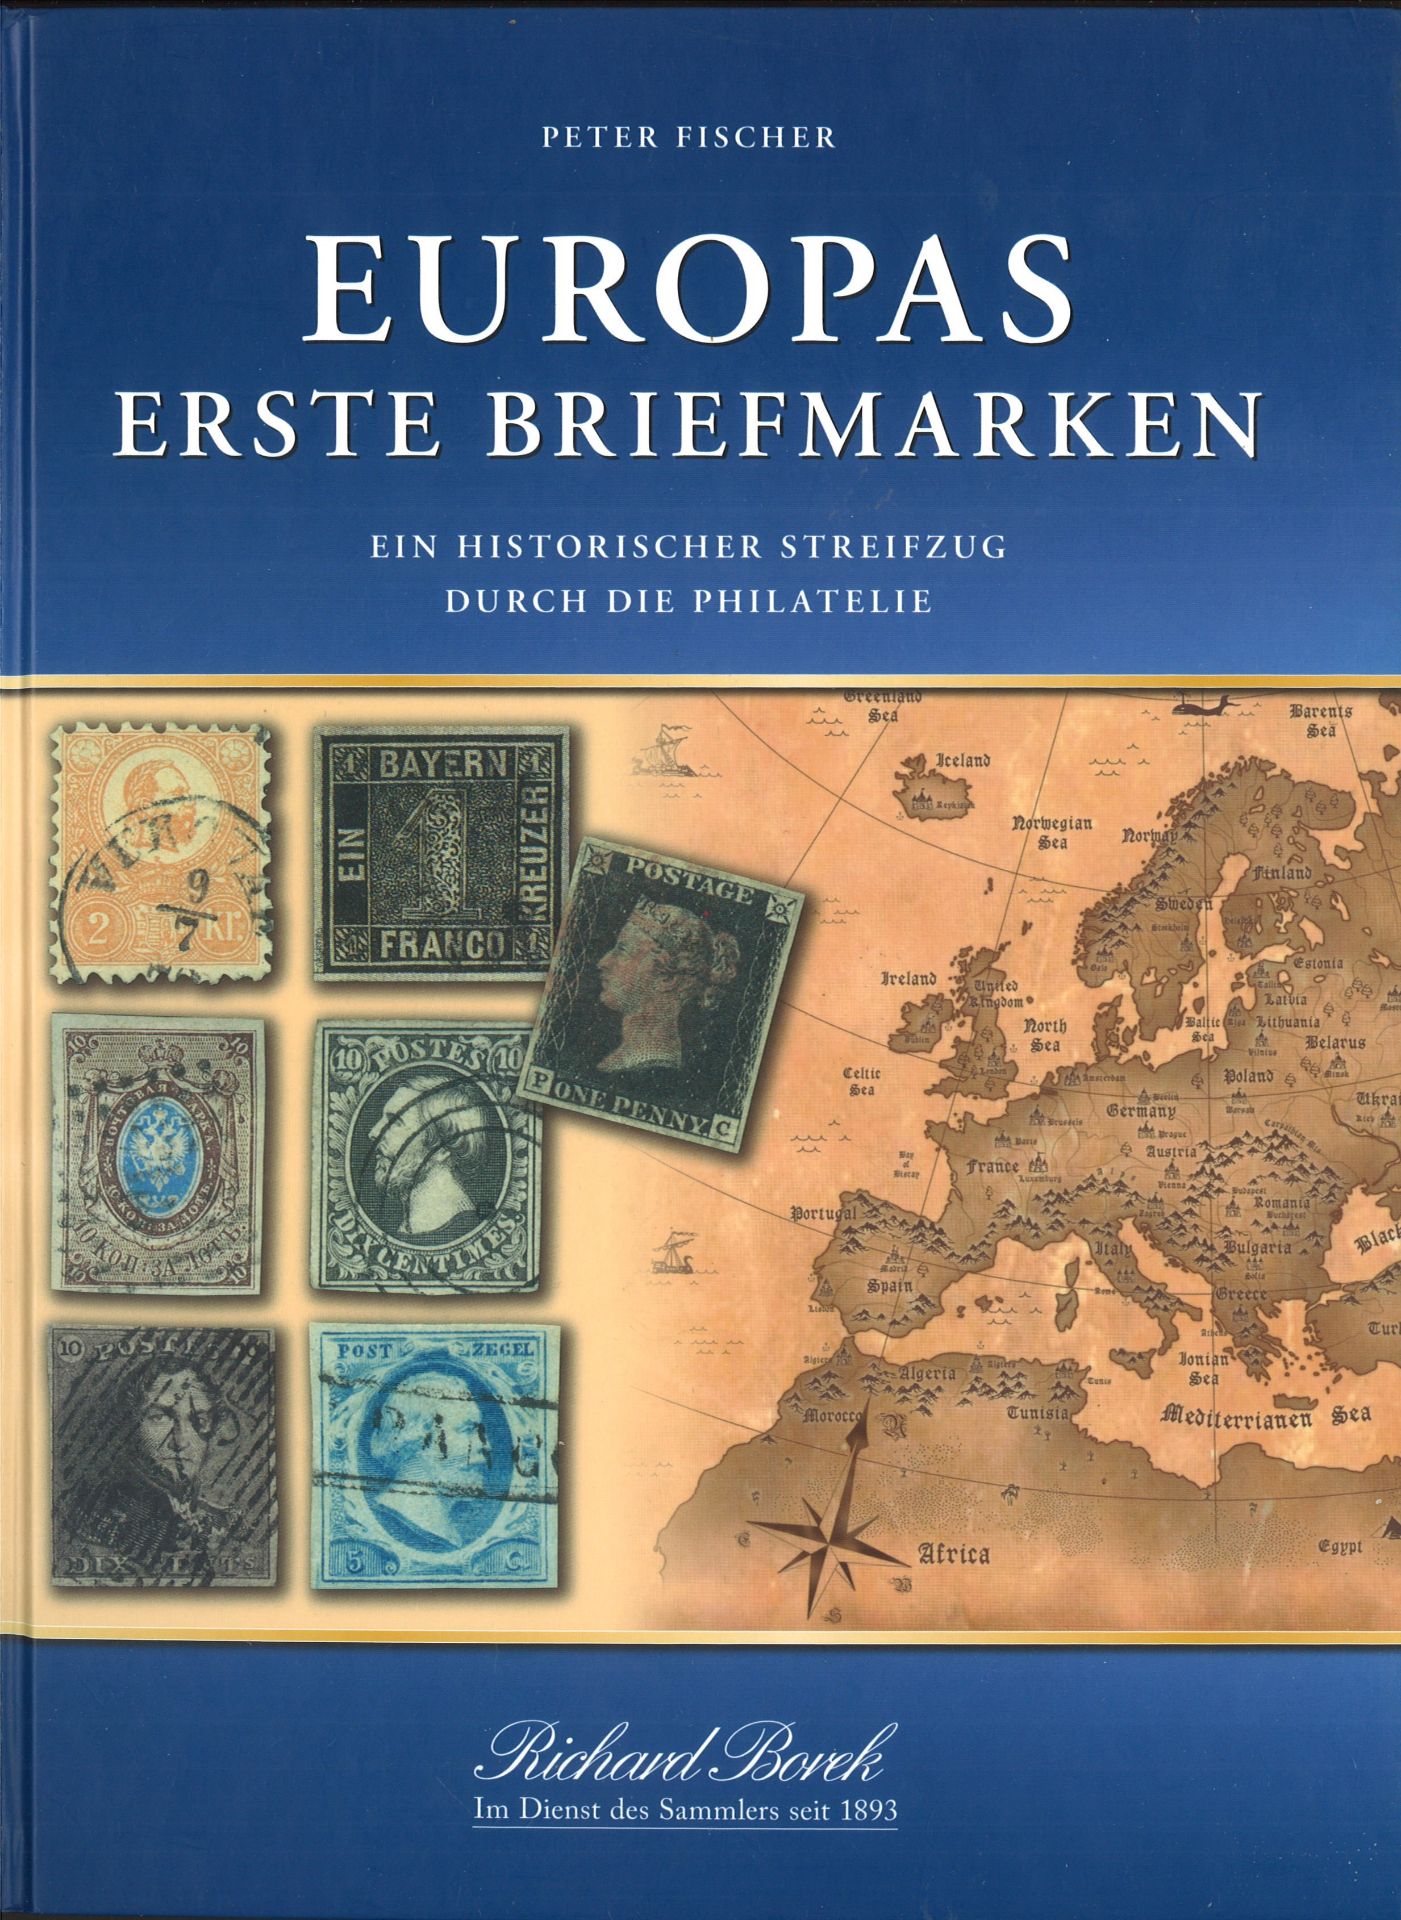 Borek Buch von Peter Fischer "Europas erste Briefmarken" teilweise gefüllt ab Nr. 1. Bitte